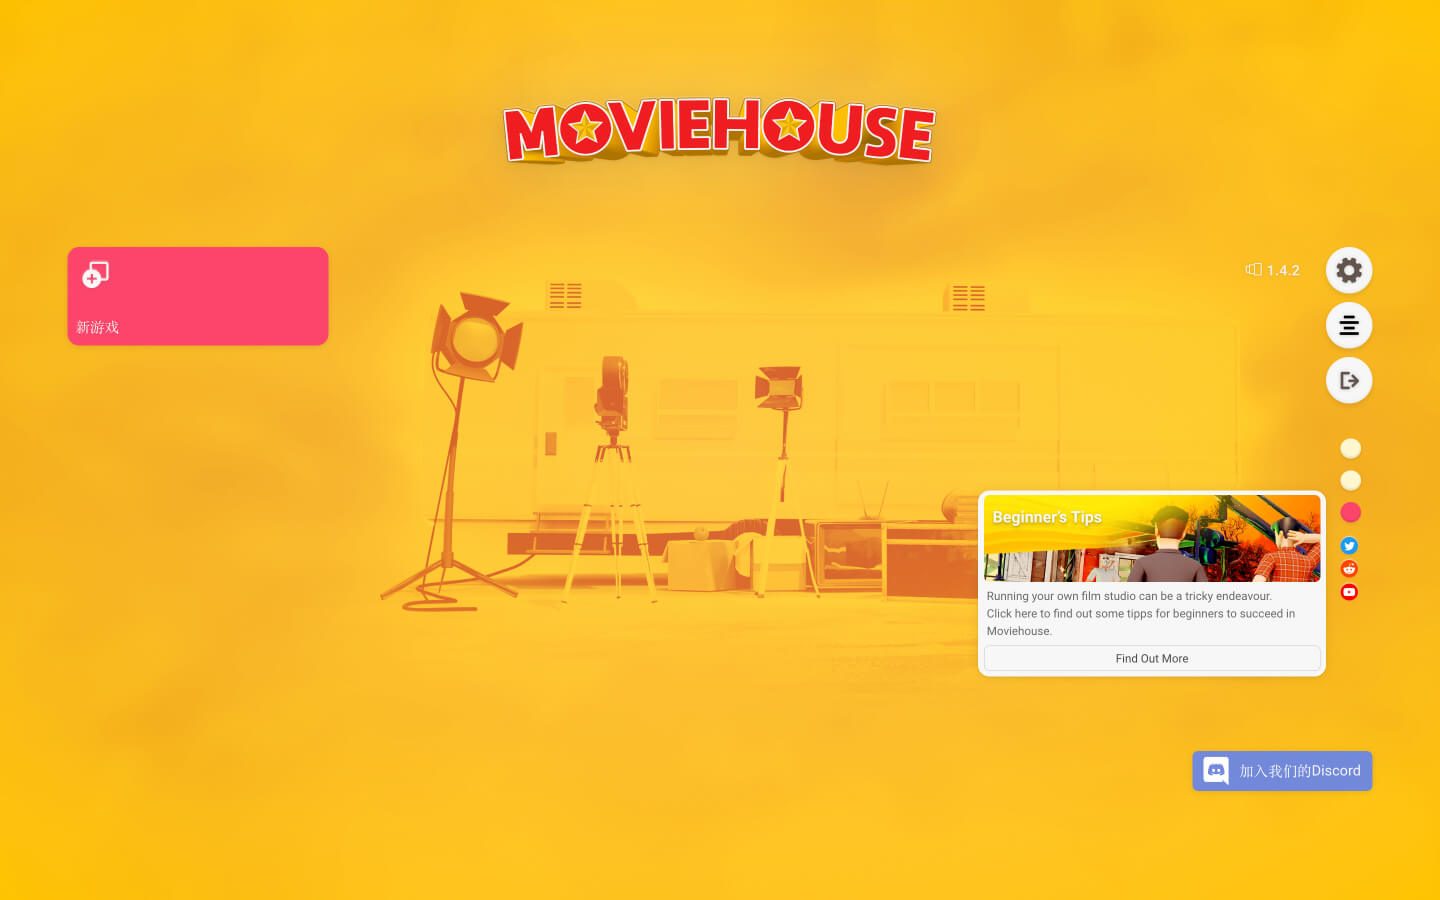 佳片相约——电影制片厂大亨 for Mac v1.6.0 Moviehouse – The Film Studio Tycoon 中文原生版 苹果电脑